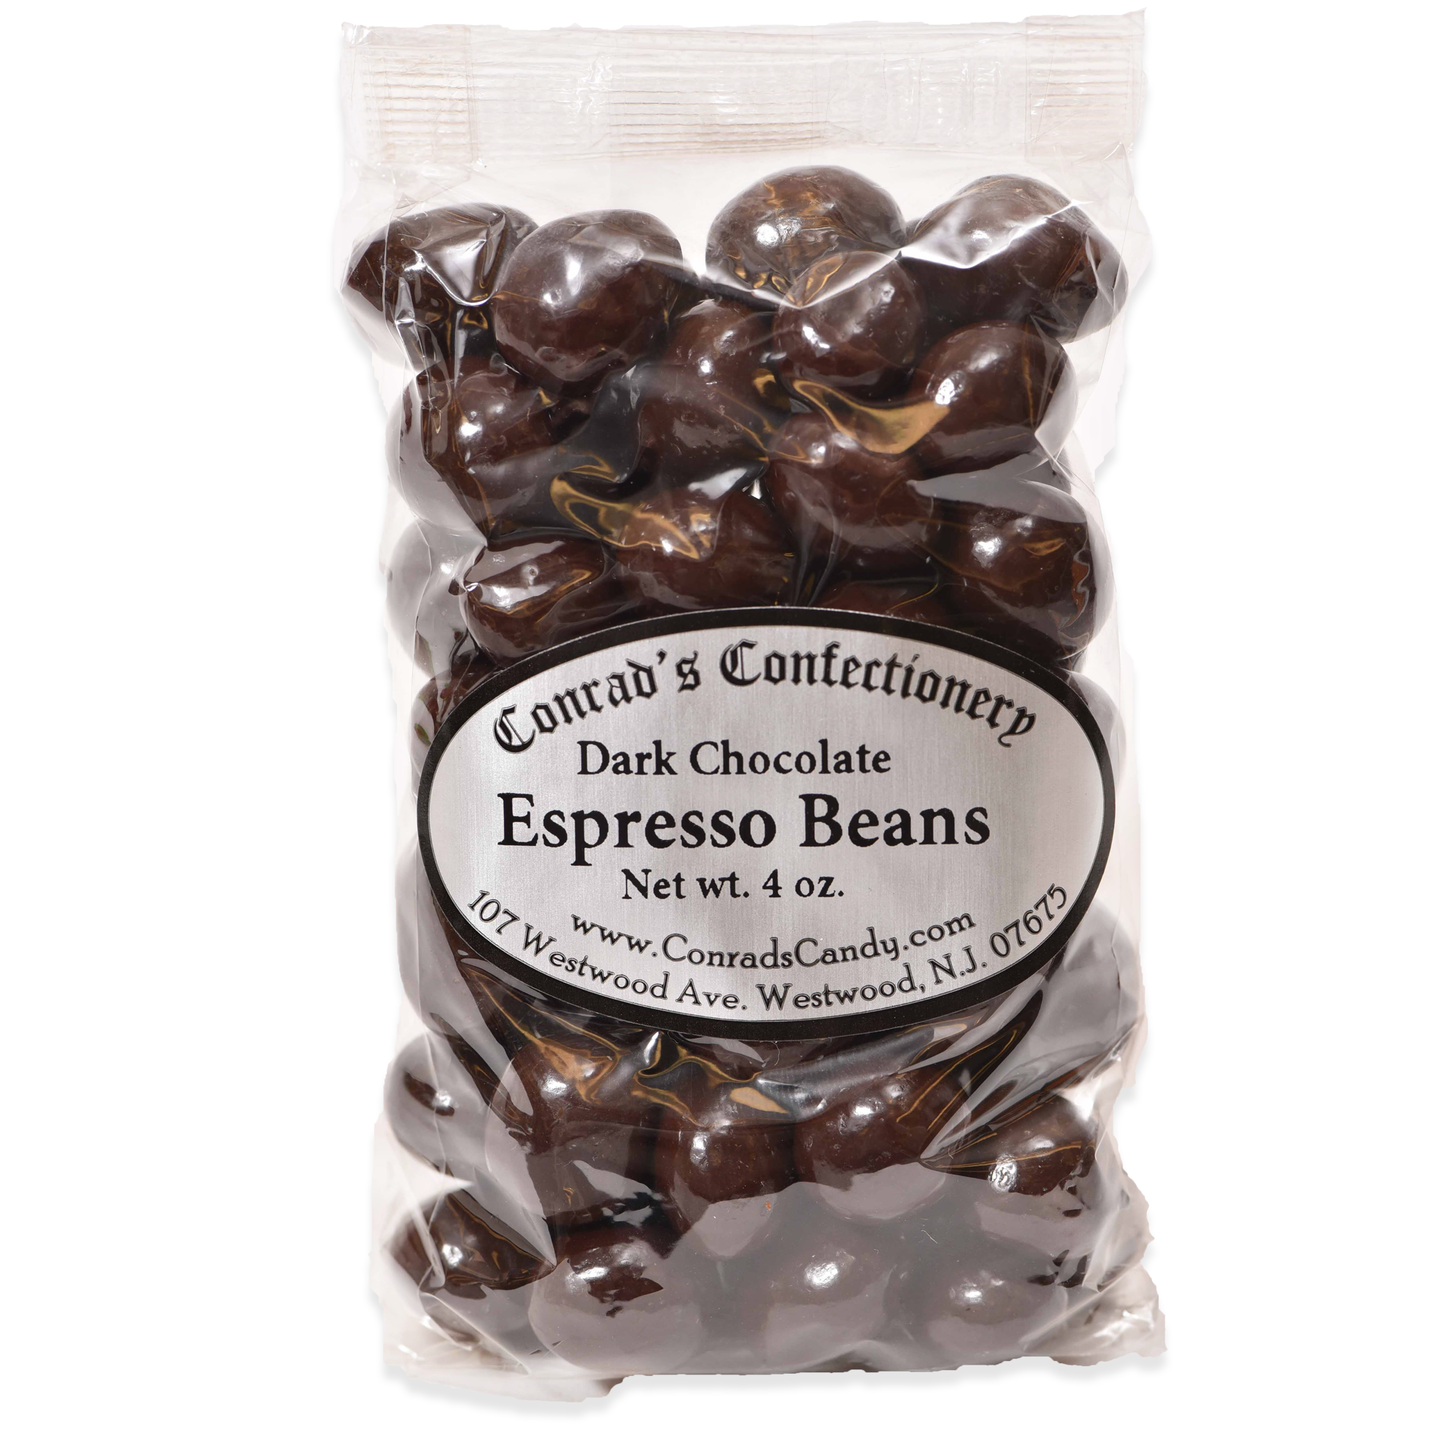 Dark Chocolate Espresso Beans- 4 oz bag